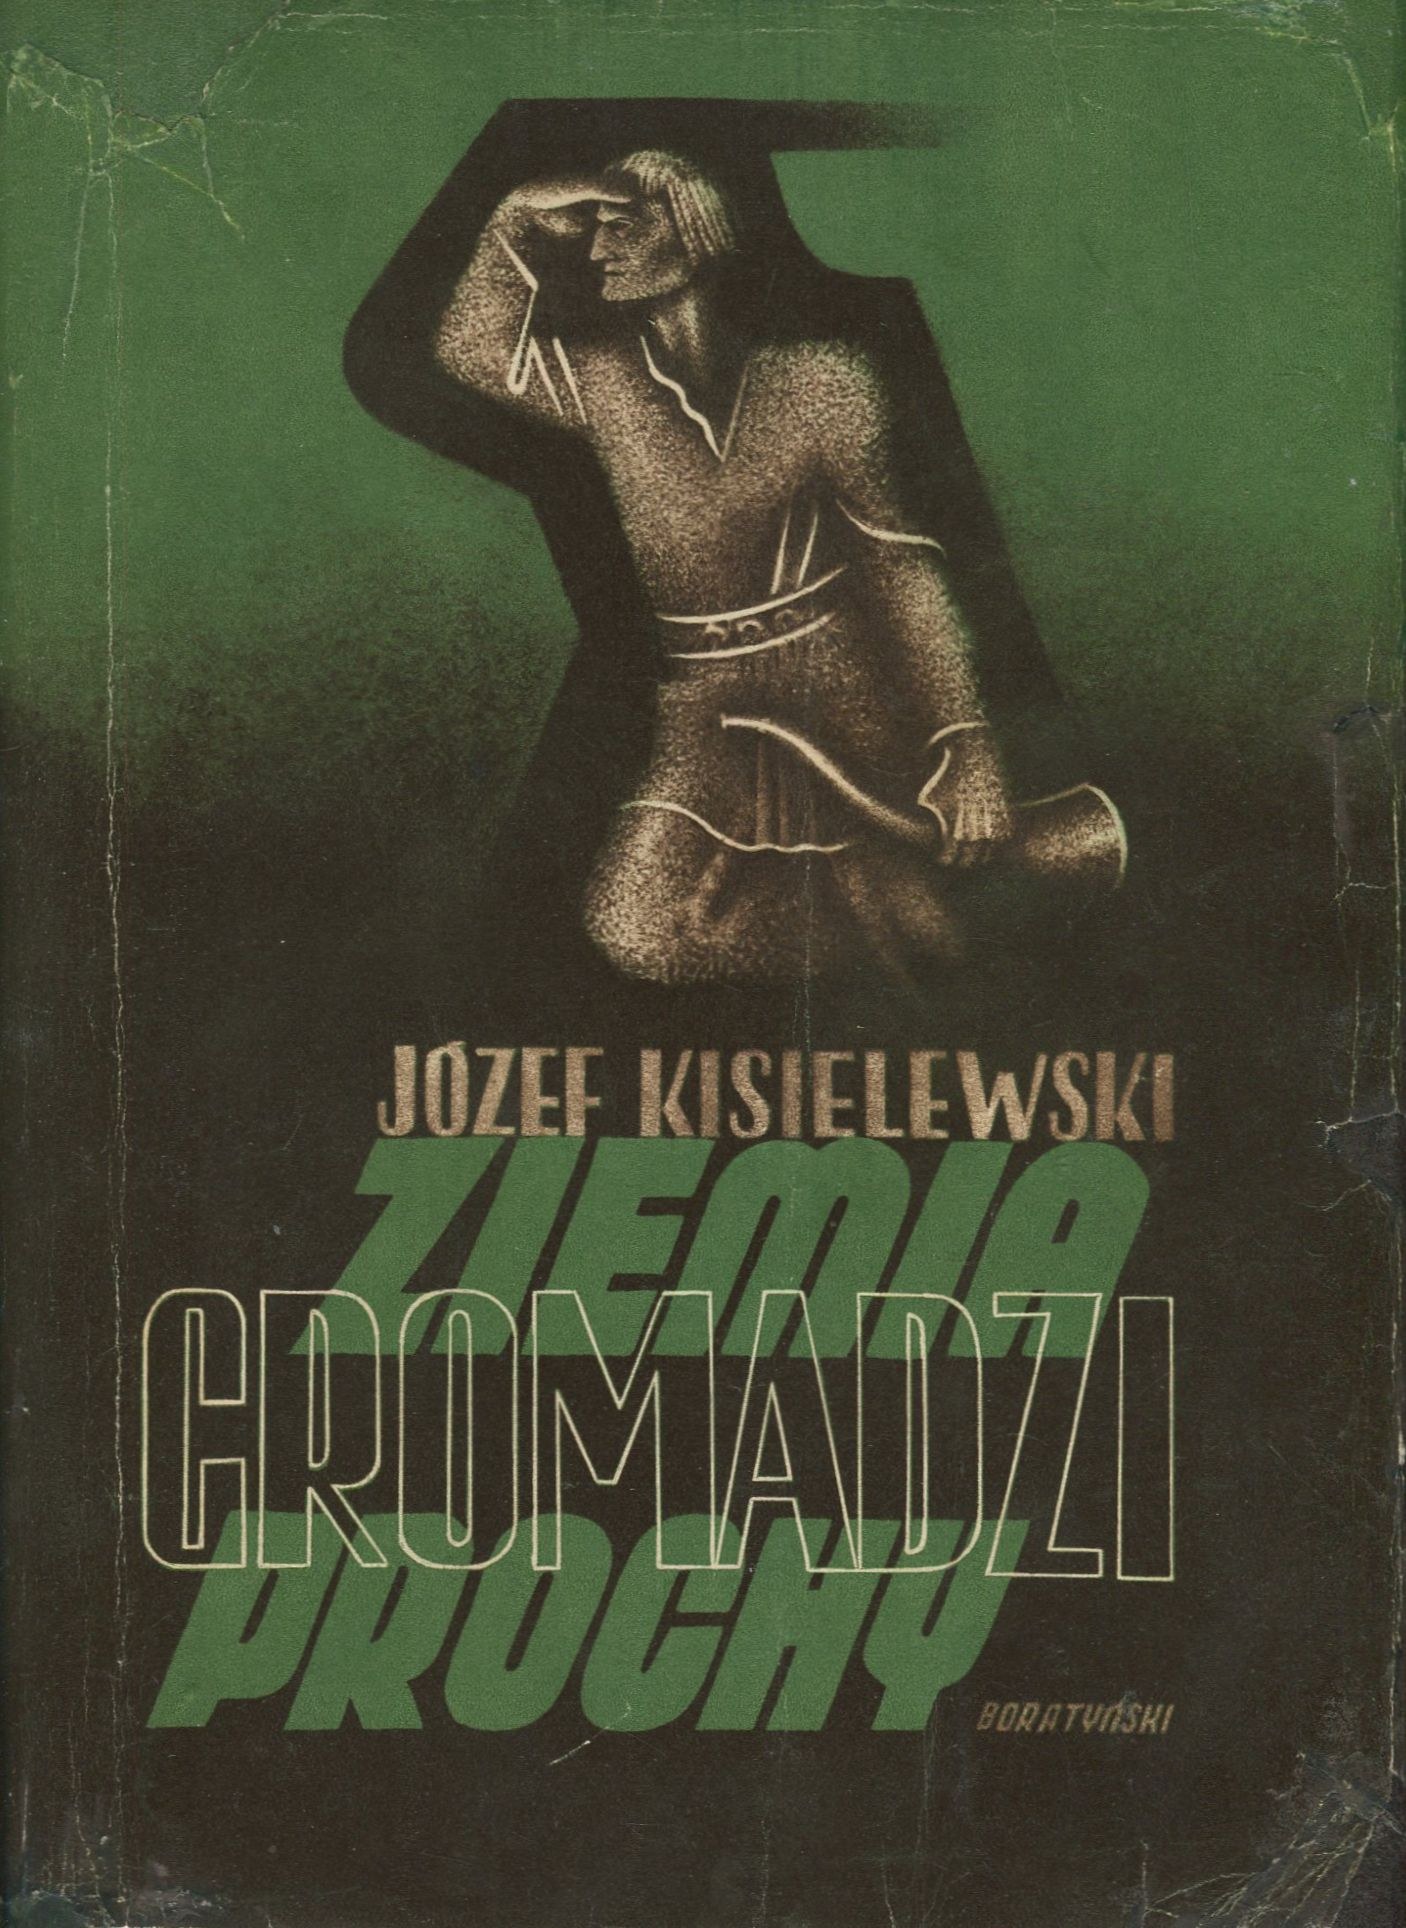 Książka Józefa Kisielewskiego opisująca dwie podróże autora po Niemczech w roku 1937 i 1938 jest świadectwem przyoblekania się narodu niemieckiego w brunatne barwy morderczego systemu. Jest również aktem oskarżenia, zawierającym […]